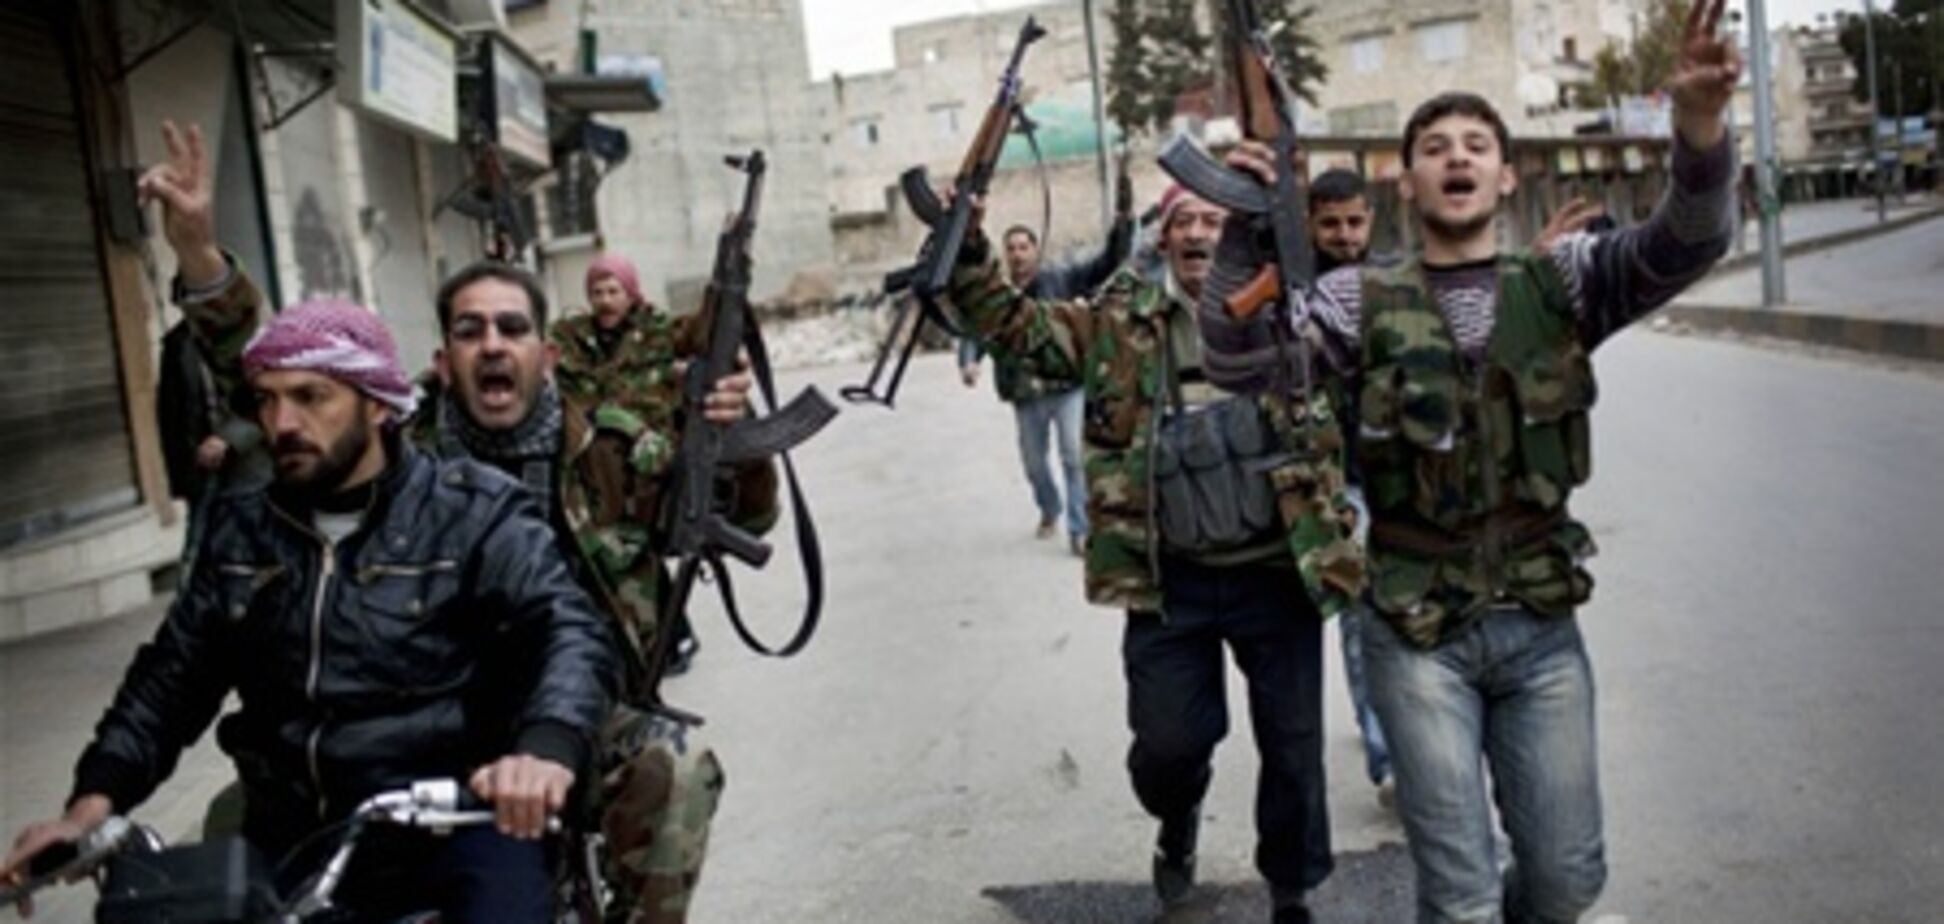 Der Spiegel: специалисты из США тренируют сирийских повстанцев 